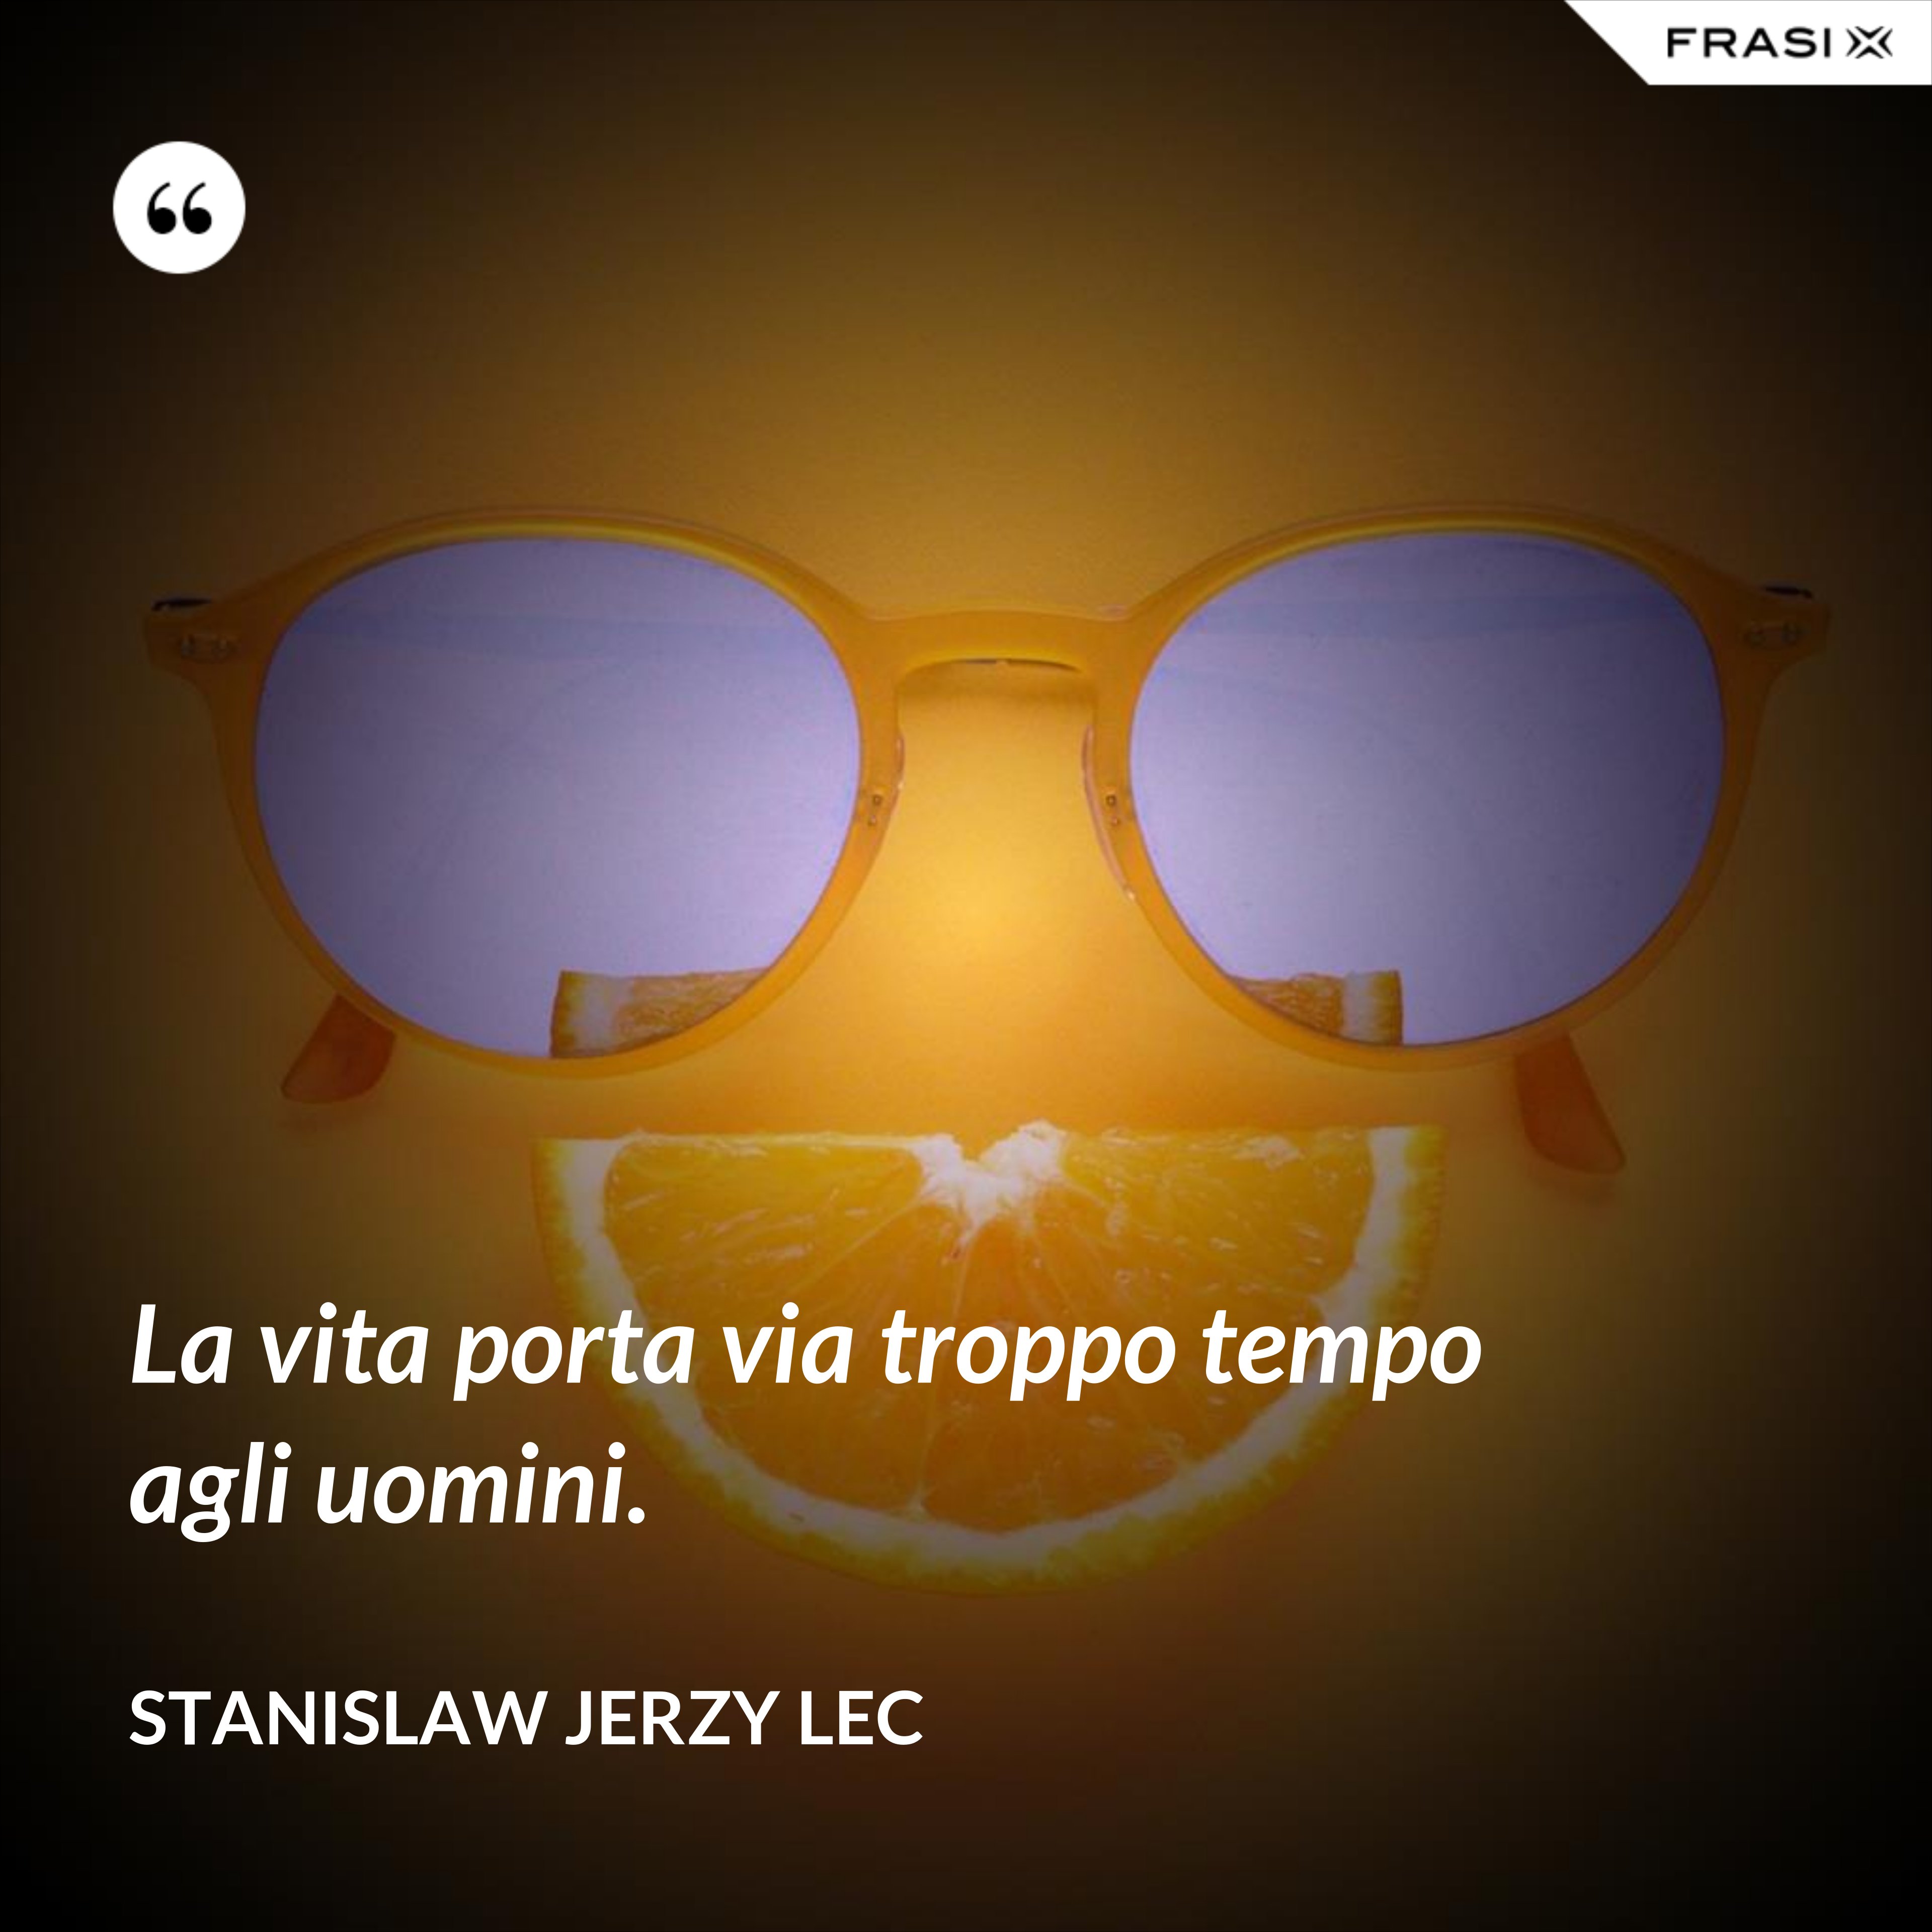 La vita porta via troppo tempo agli uomini. - Stanislaw Jerzy Lec